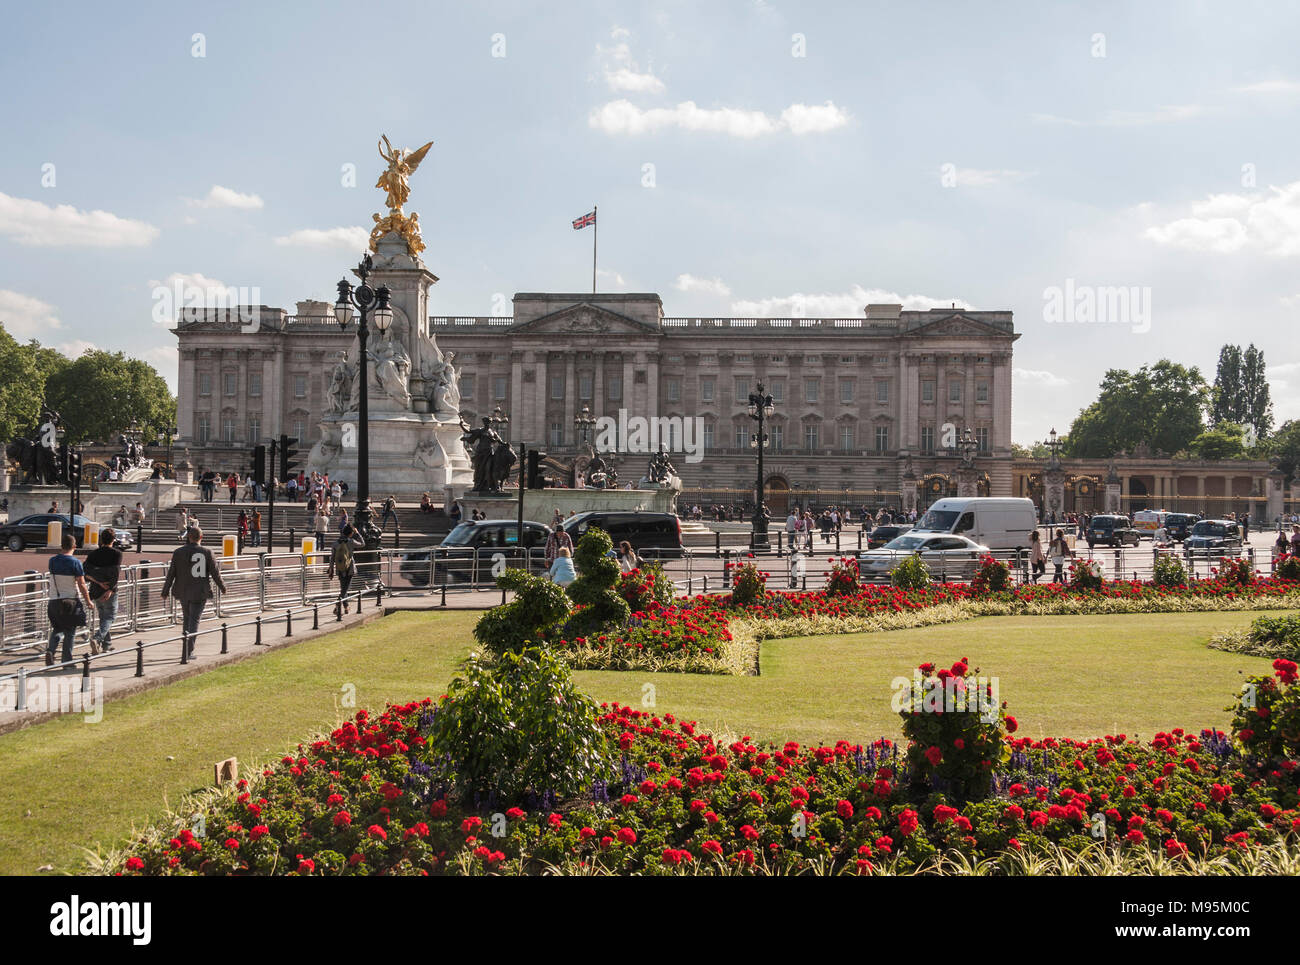 Le centre commercial menant au palais de Buckingham à Londres, Angleterre, Royaume-Uni Banque D'Images